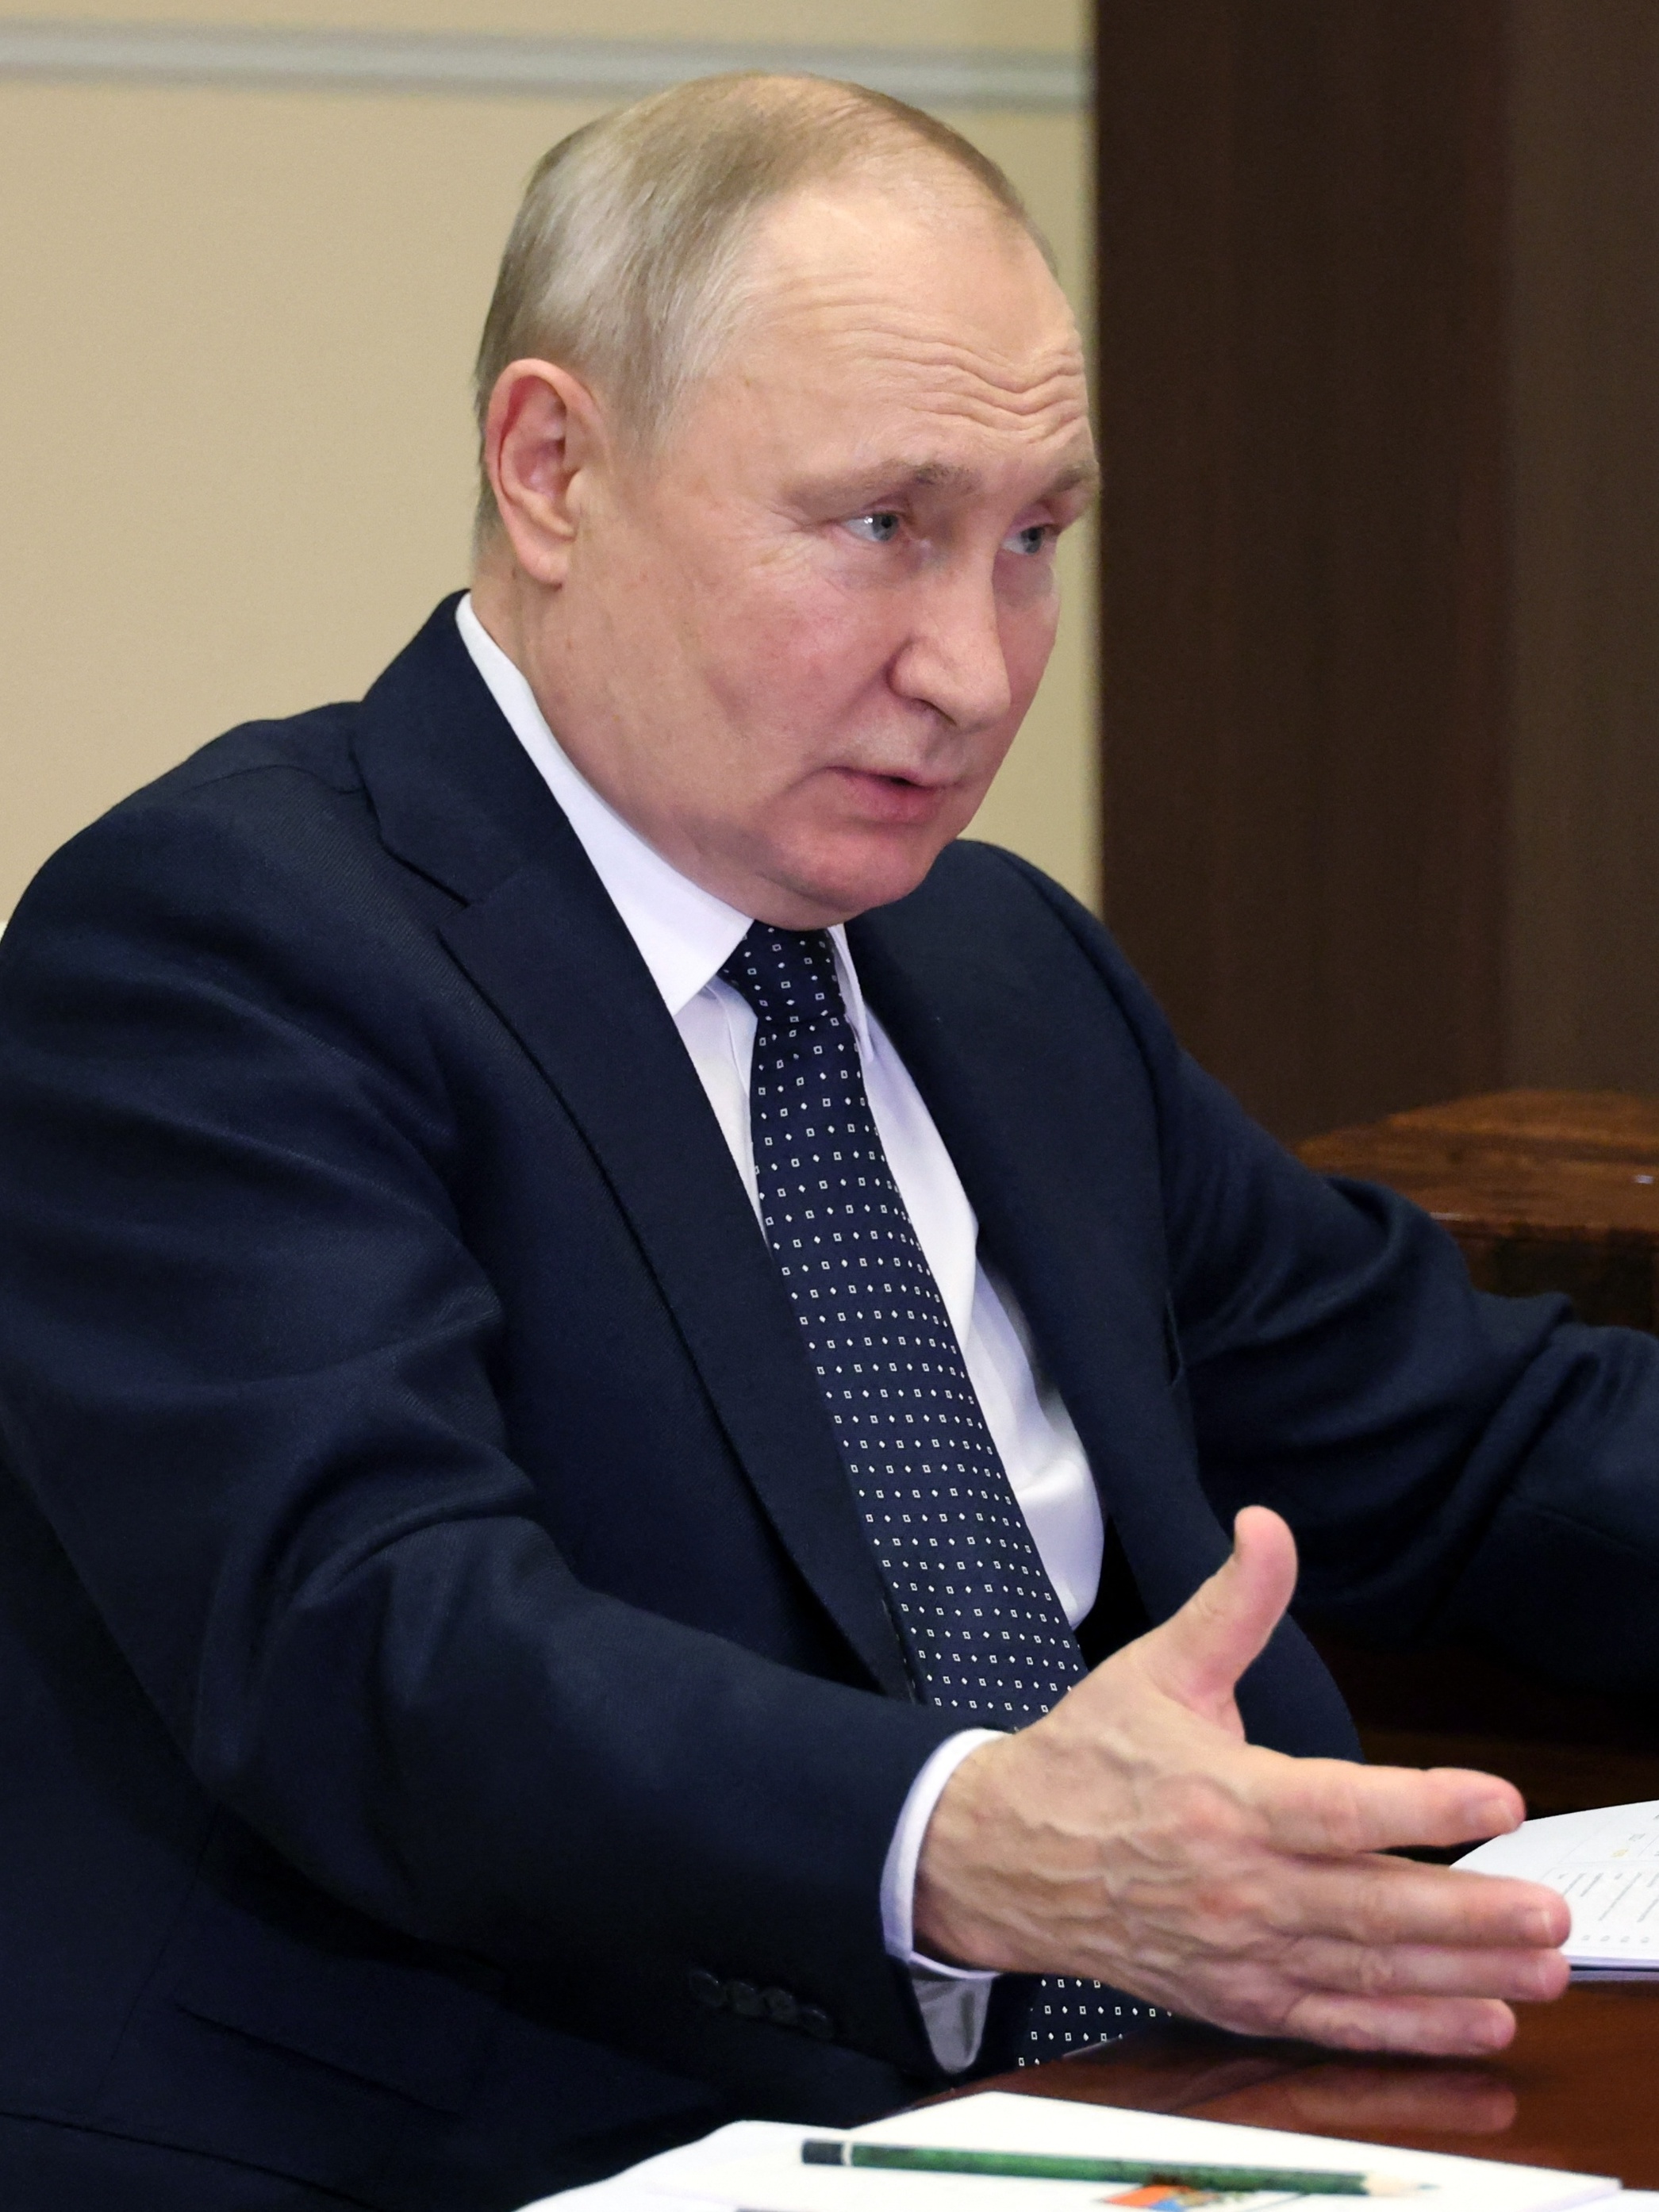 Putin não comparecerá à cúpula dos Brics na África do Sul, afirma